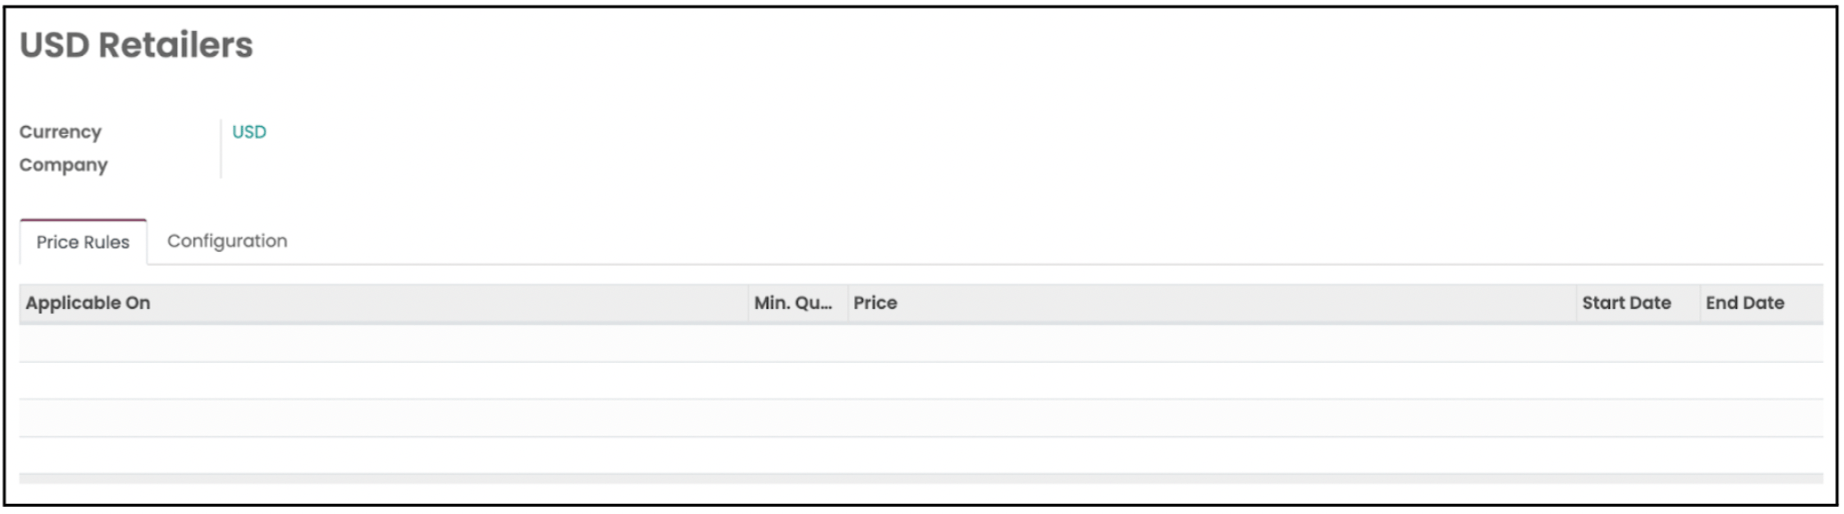 Odoo User Guide Sales Module Membuat Daftar Harga dengan Mata Uang Asing